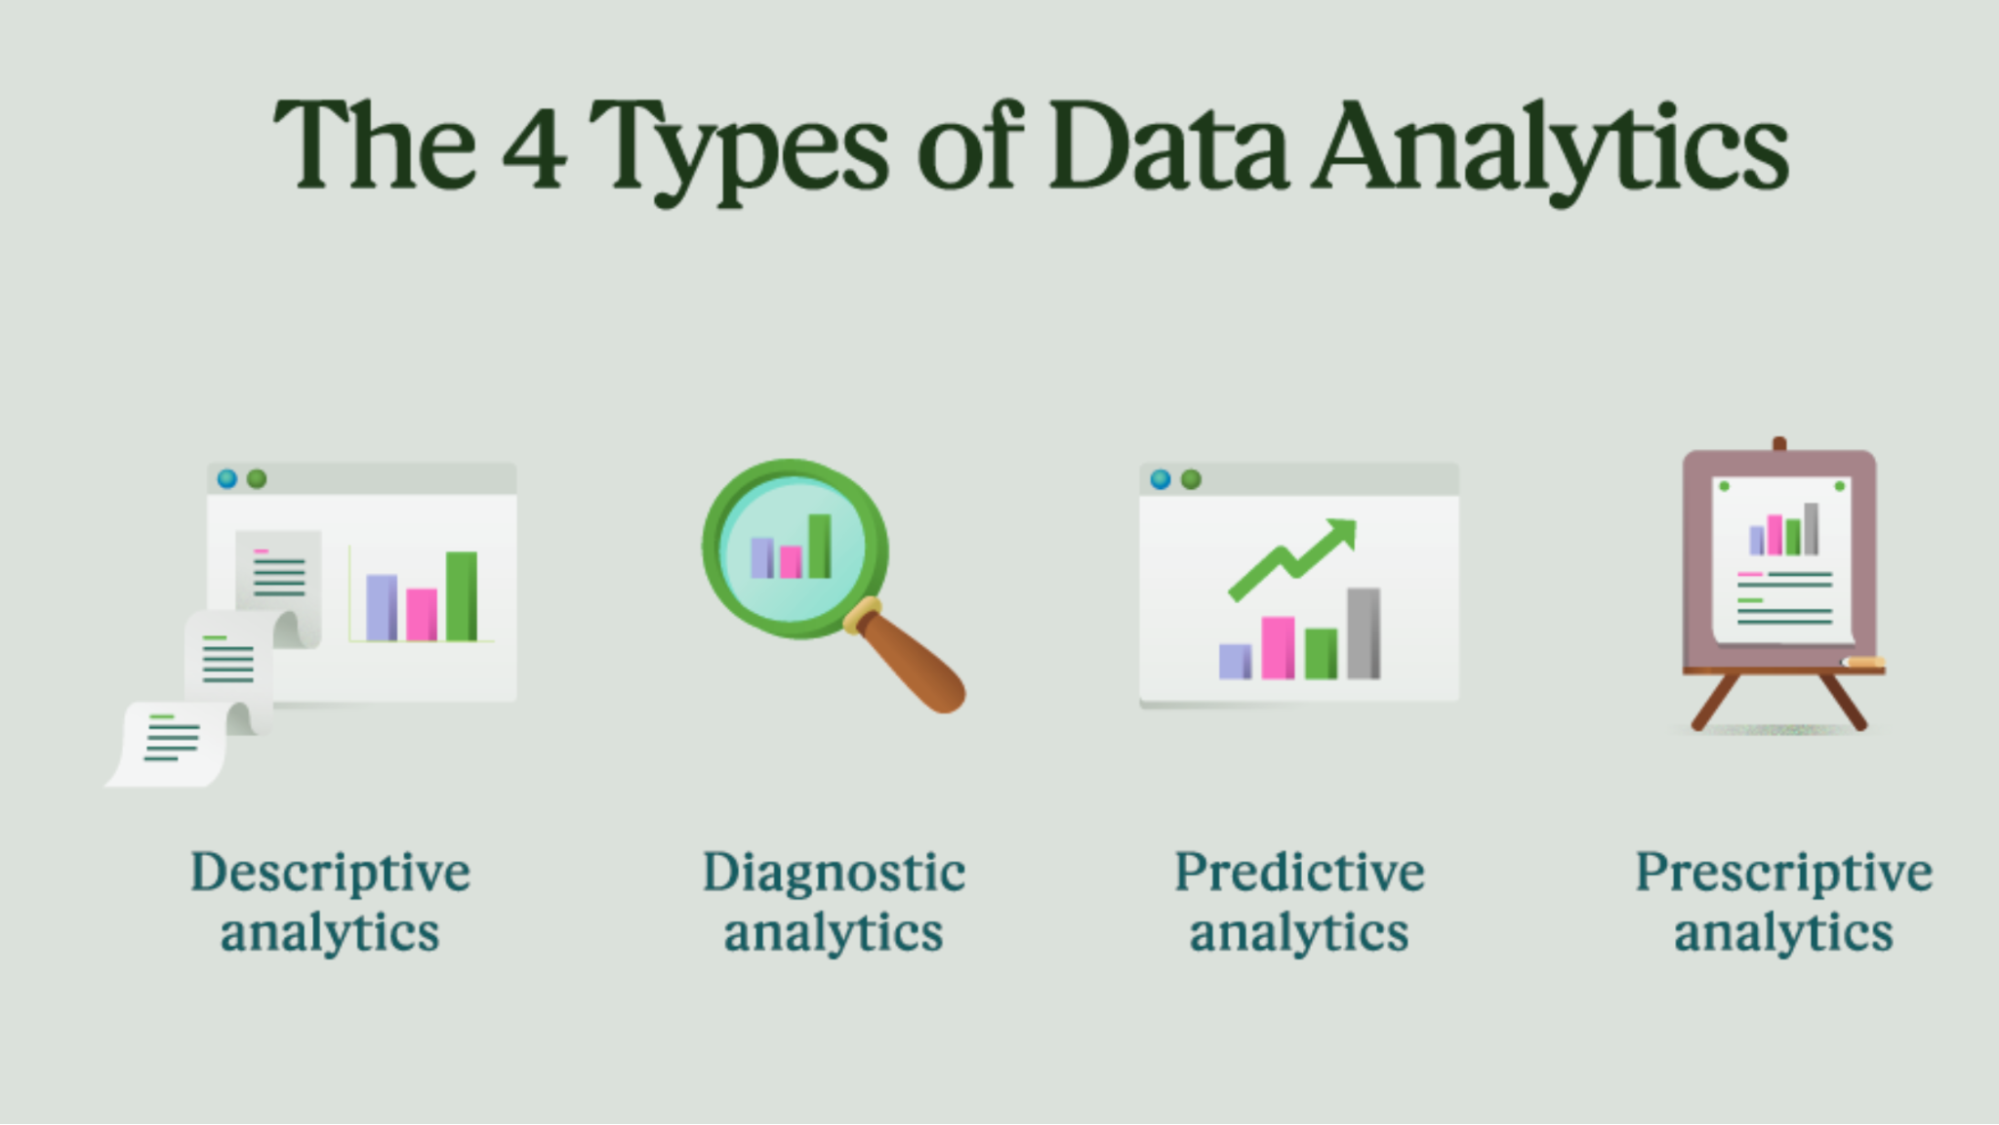  Data analytics